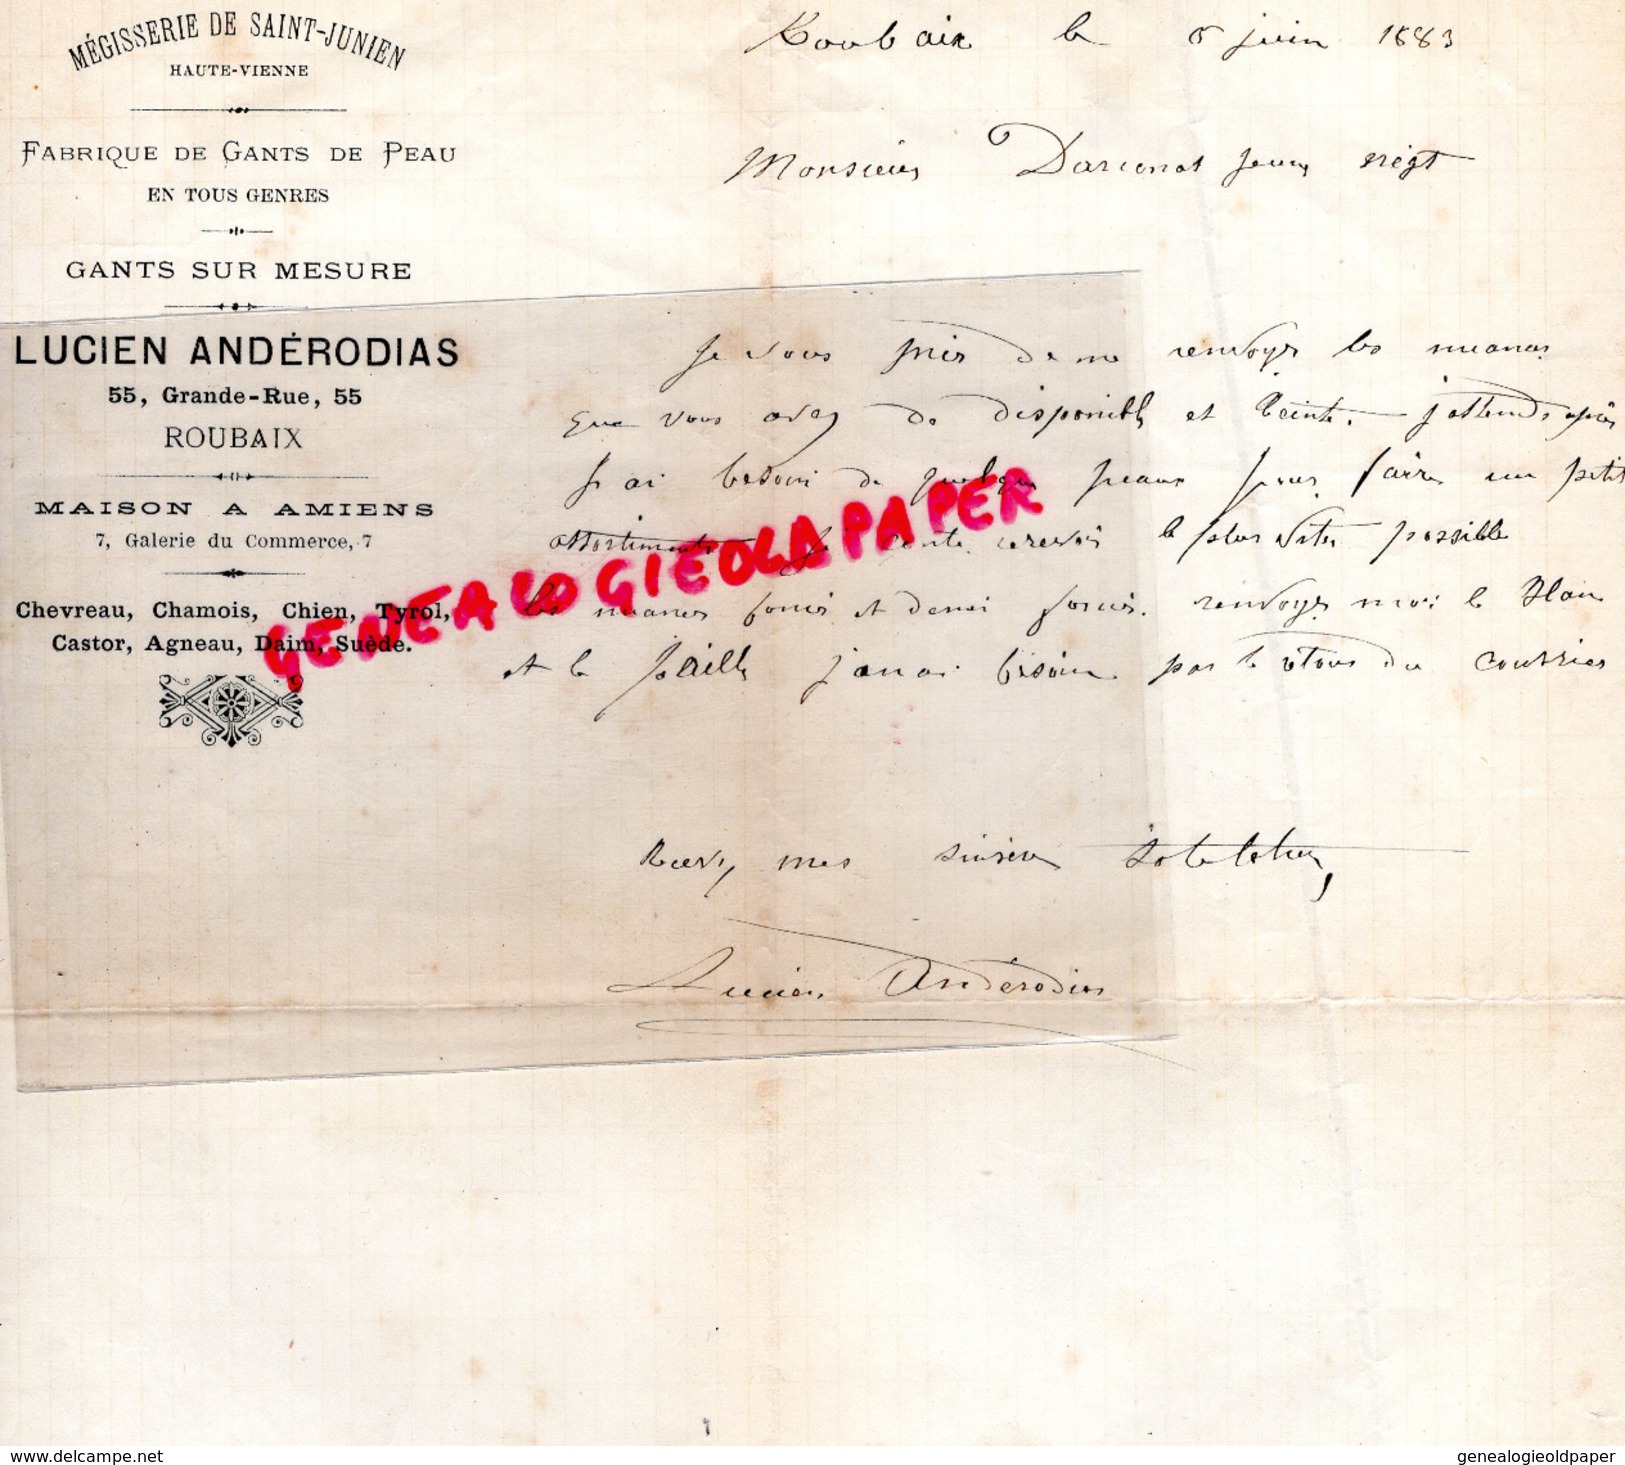 59 - ROUBAIX - LETTRE LUCIEN ANDERODIAS -GANTIER GANTERIE -MEGISSERIE ST SAINT JUNIEN- DARCONNAT 1883- AMIENS GANTS GANT - 1800 – 1899